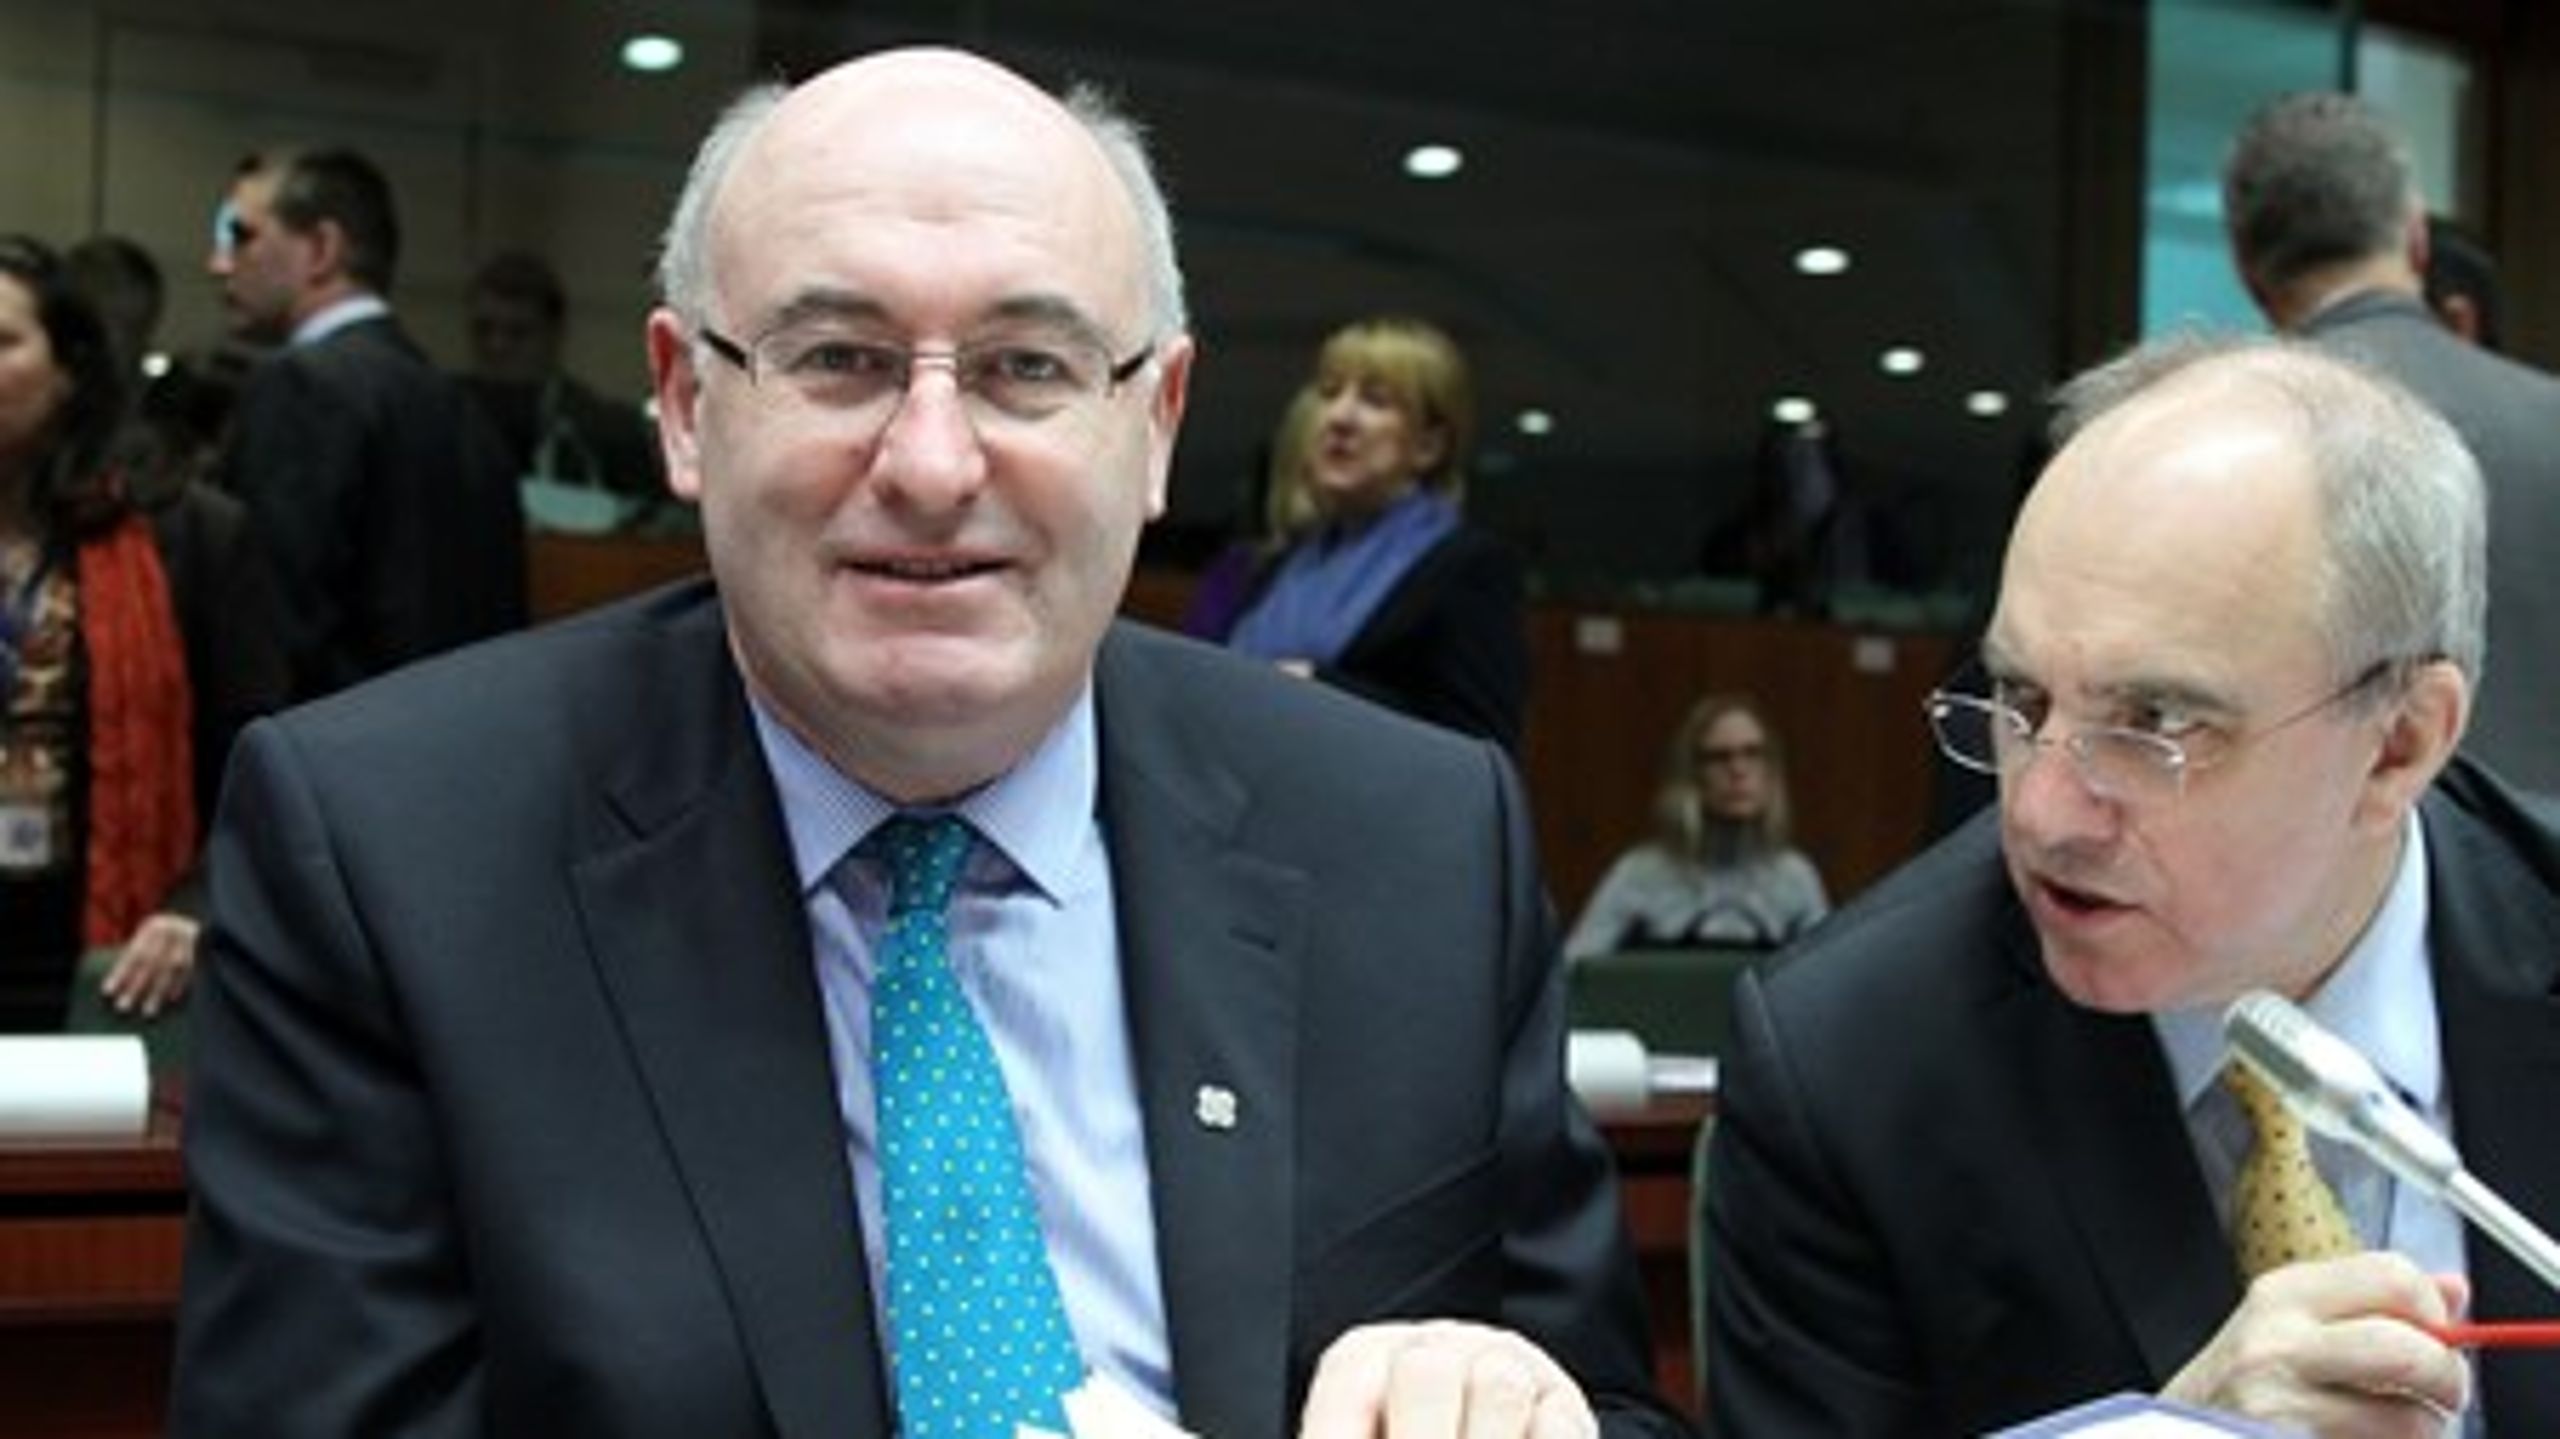 Irlands kommissærkandidat Phil Hogan er kommet i modvind for at stævne politiske modstandere, inden han skal høres af Europa-Parlamentet.